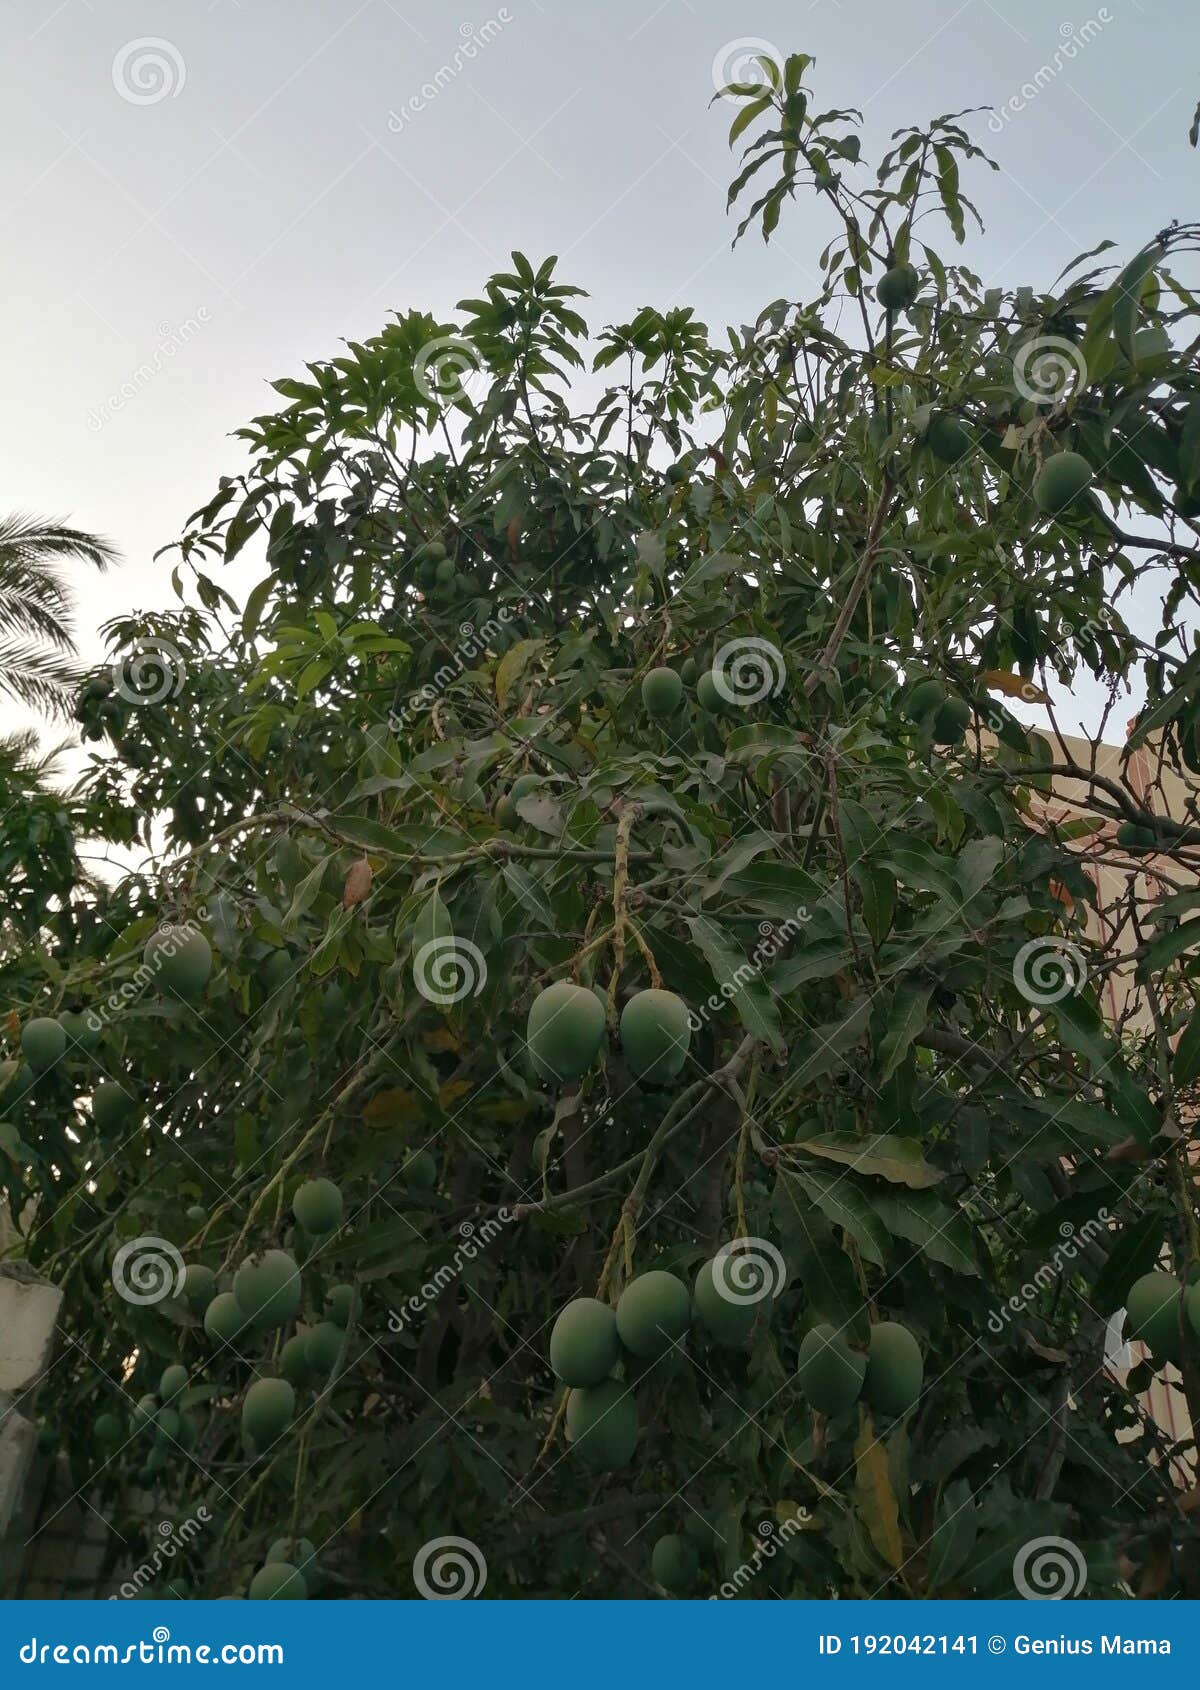 Ramas De árboles Del Mango Colgando Fruta De Los Mangos En El Jardín  Egipcio Sol Y Maravillosa Vista Imagen de archivo - Imagen de selva,  colgante: 192042141